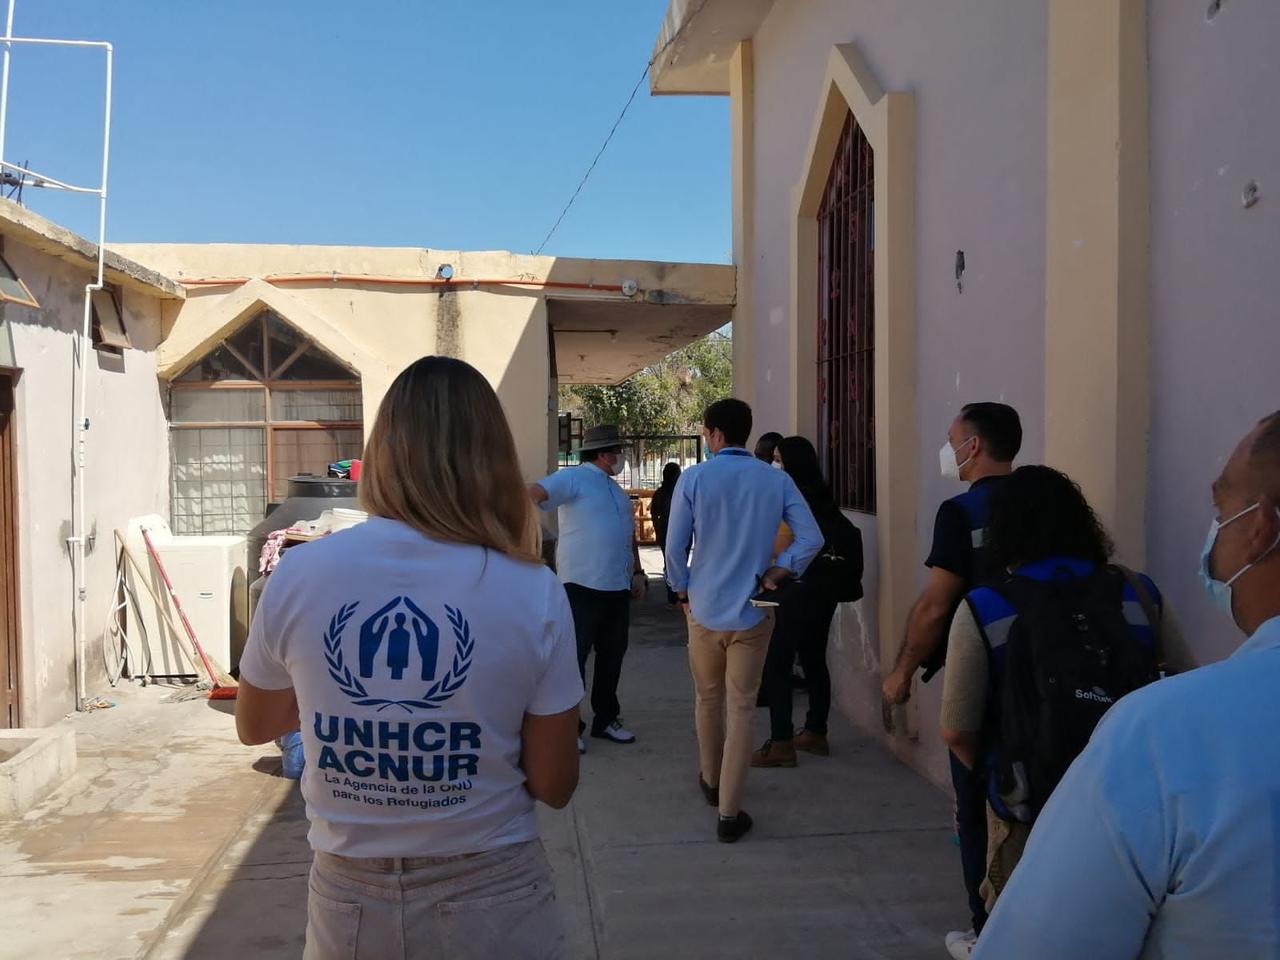 Los representantes de la Agencia de la Organización de las Naciones Unidas para los Refugiados (ACNUR por sus siglas en inglés) dialogaron con ellos para explicarles sus derechos como migrantes en suelo extranjero.

